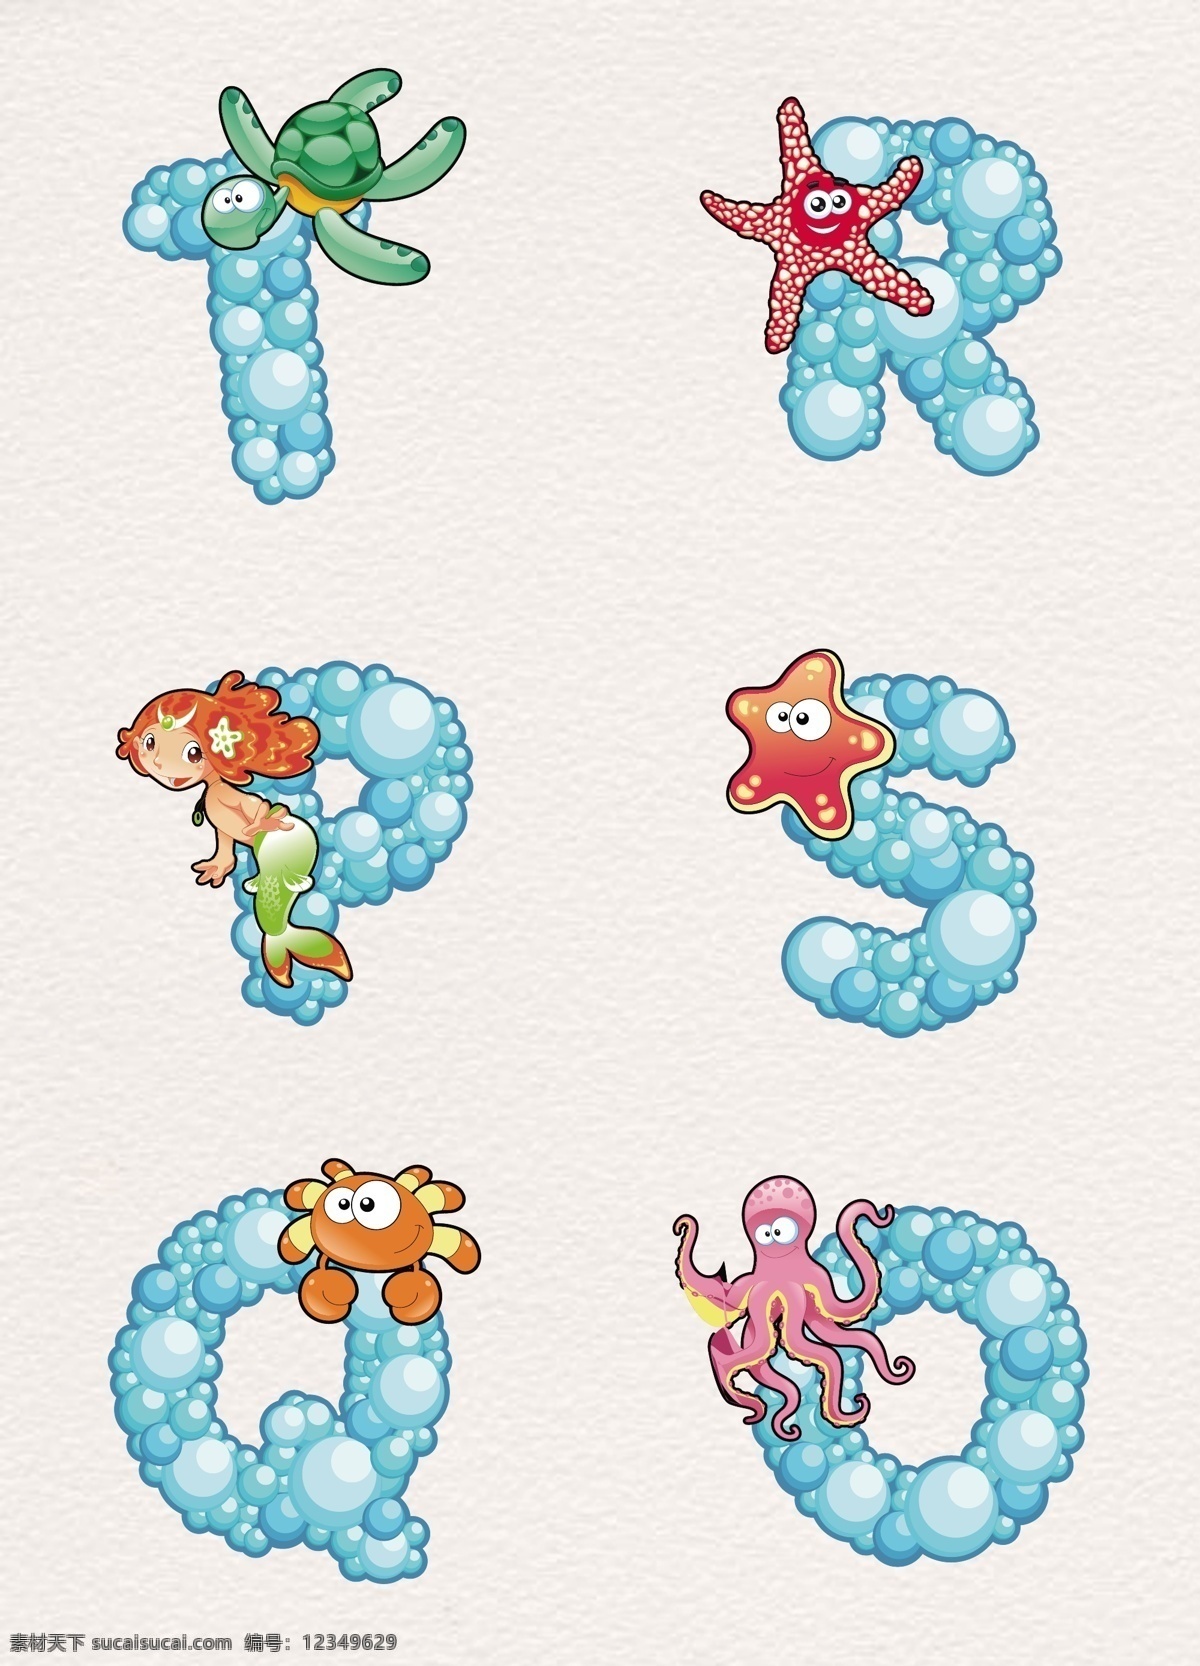 蓝色 创意 英文 字母 卡通 海洋 生物 乌龟 海星 美人鱼 螃蟹 章鱼